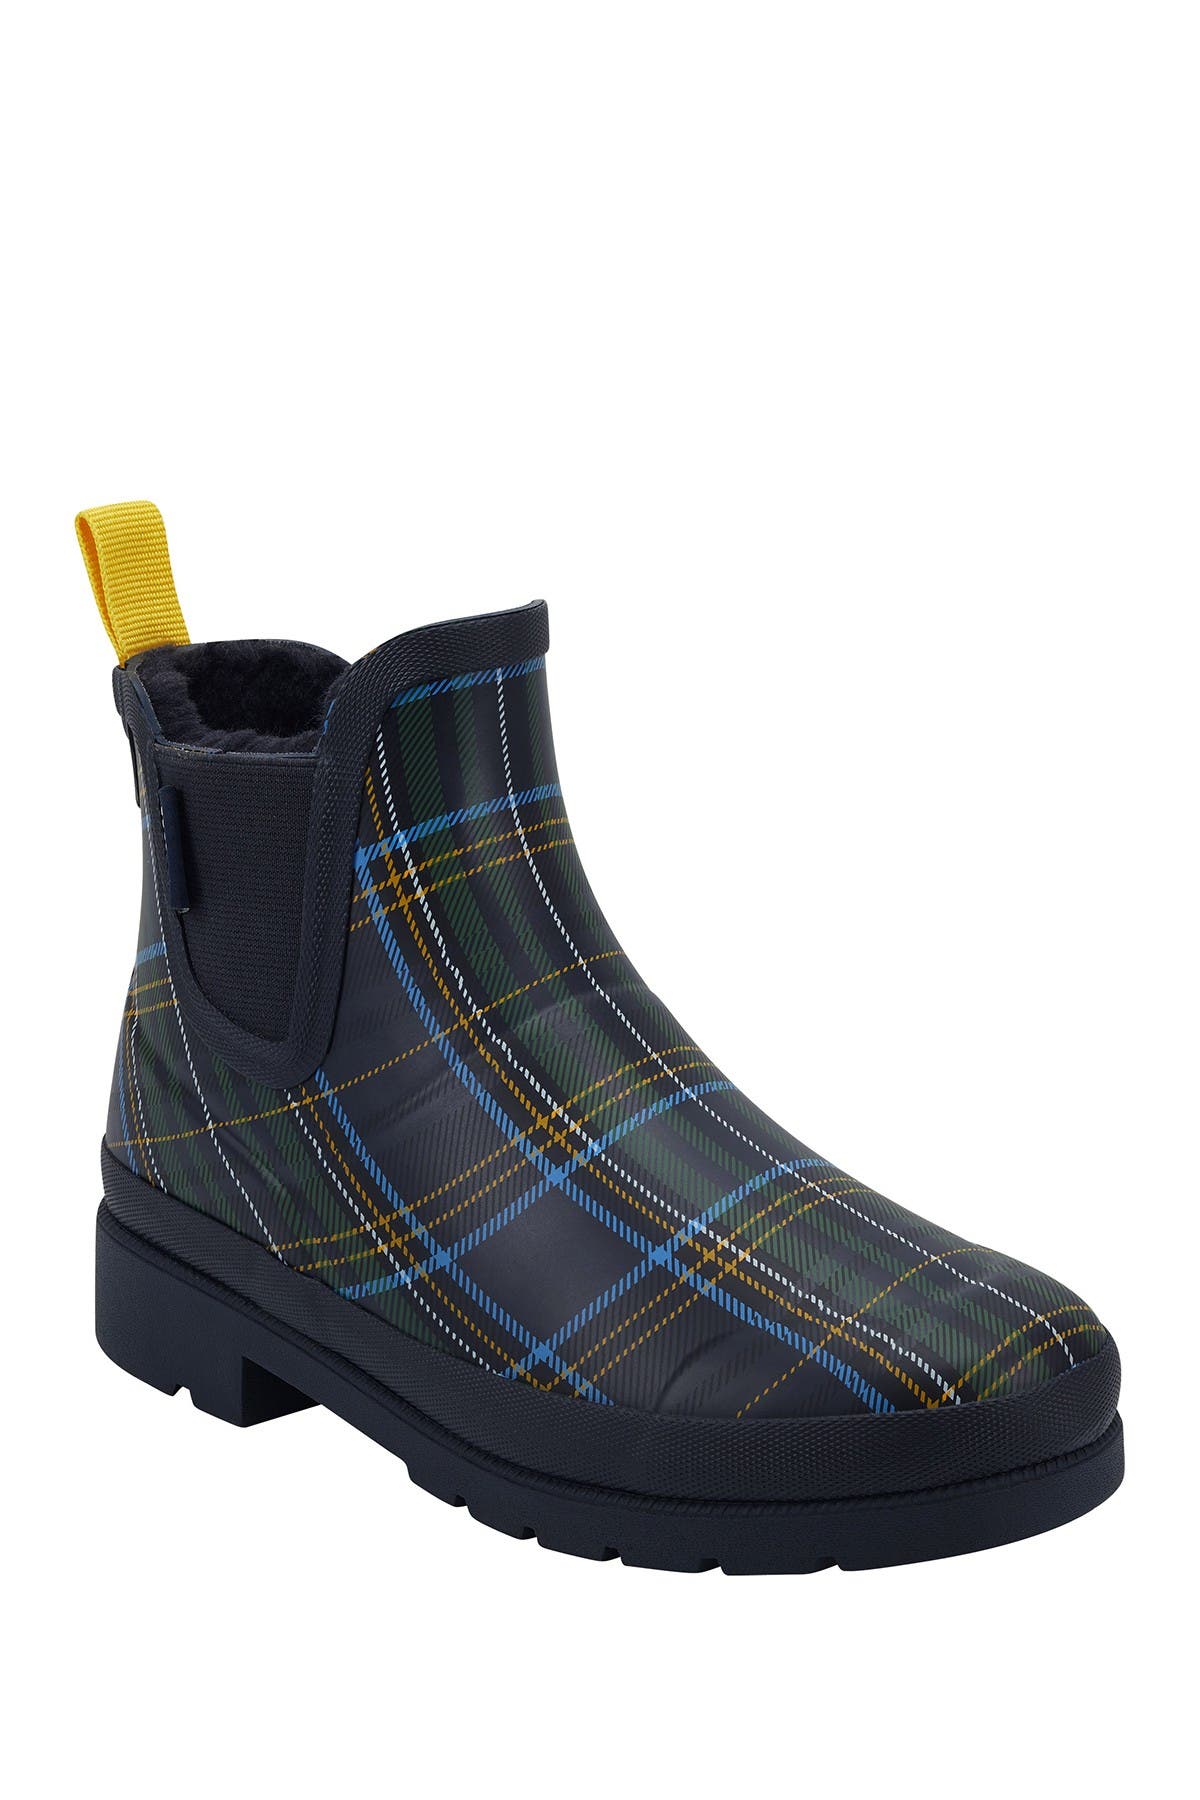 tretorn fur lined rain boots